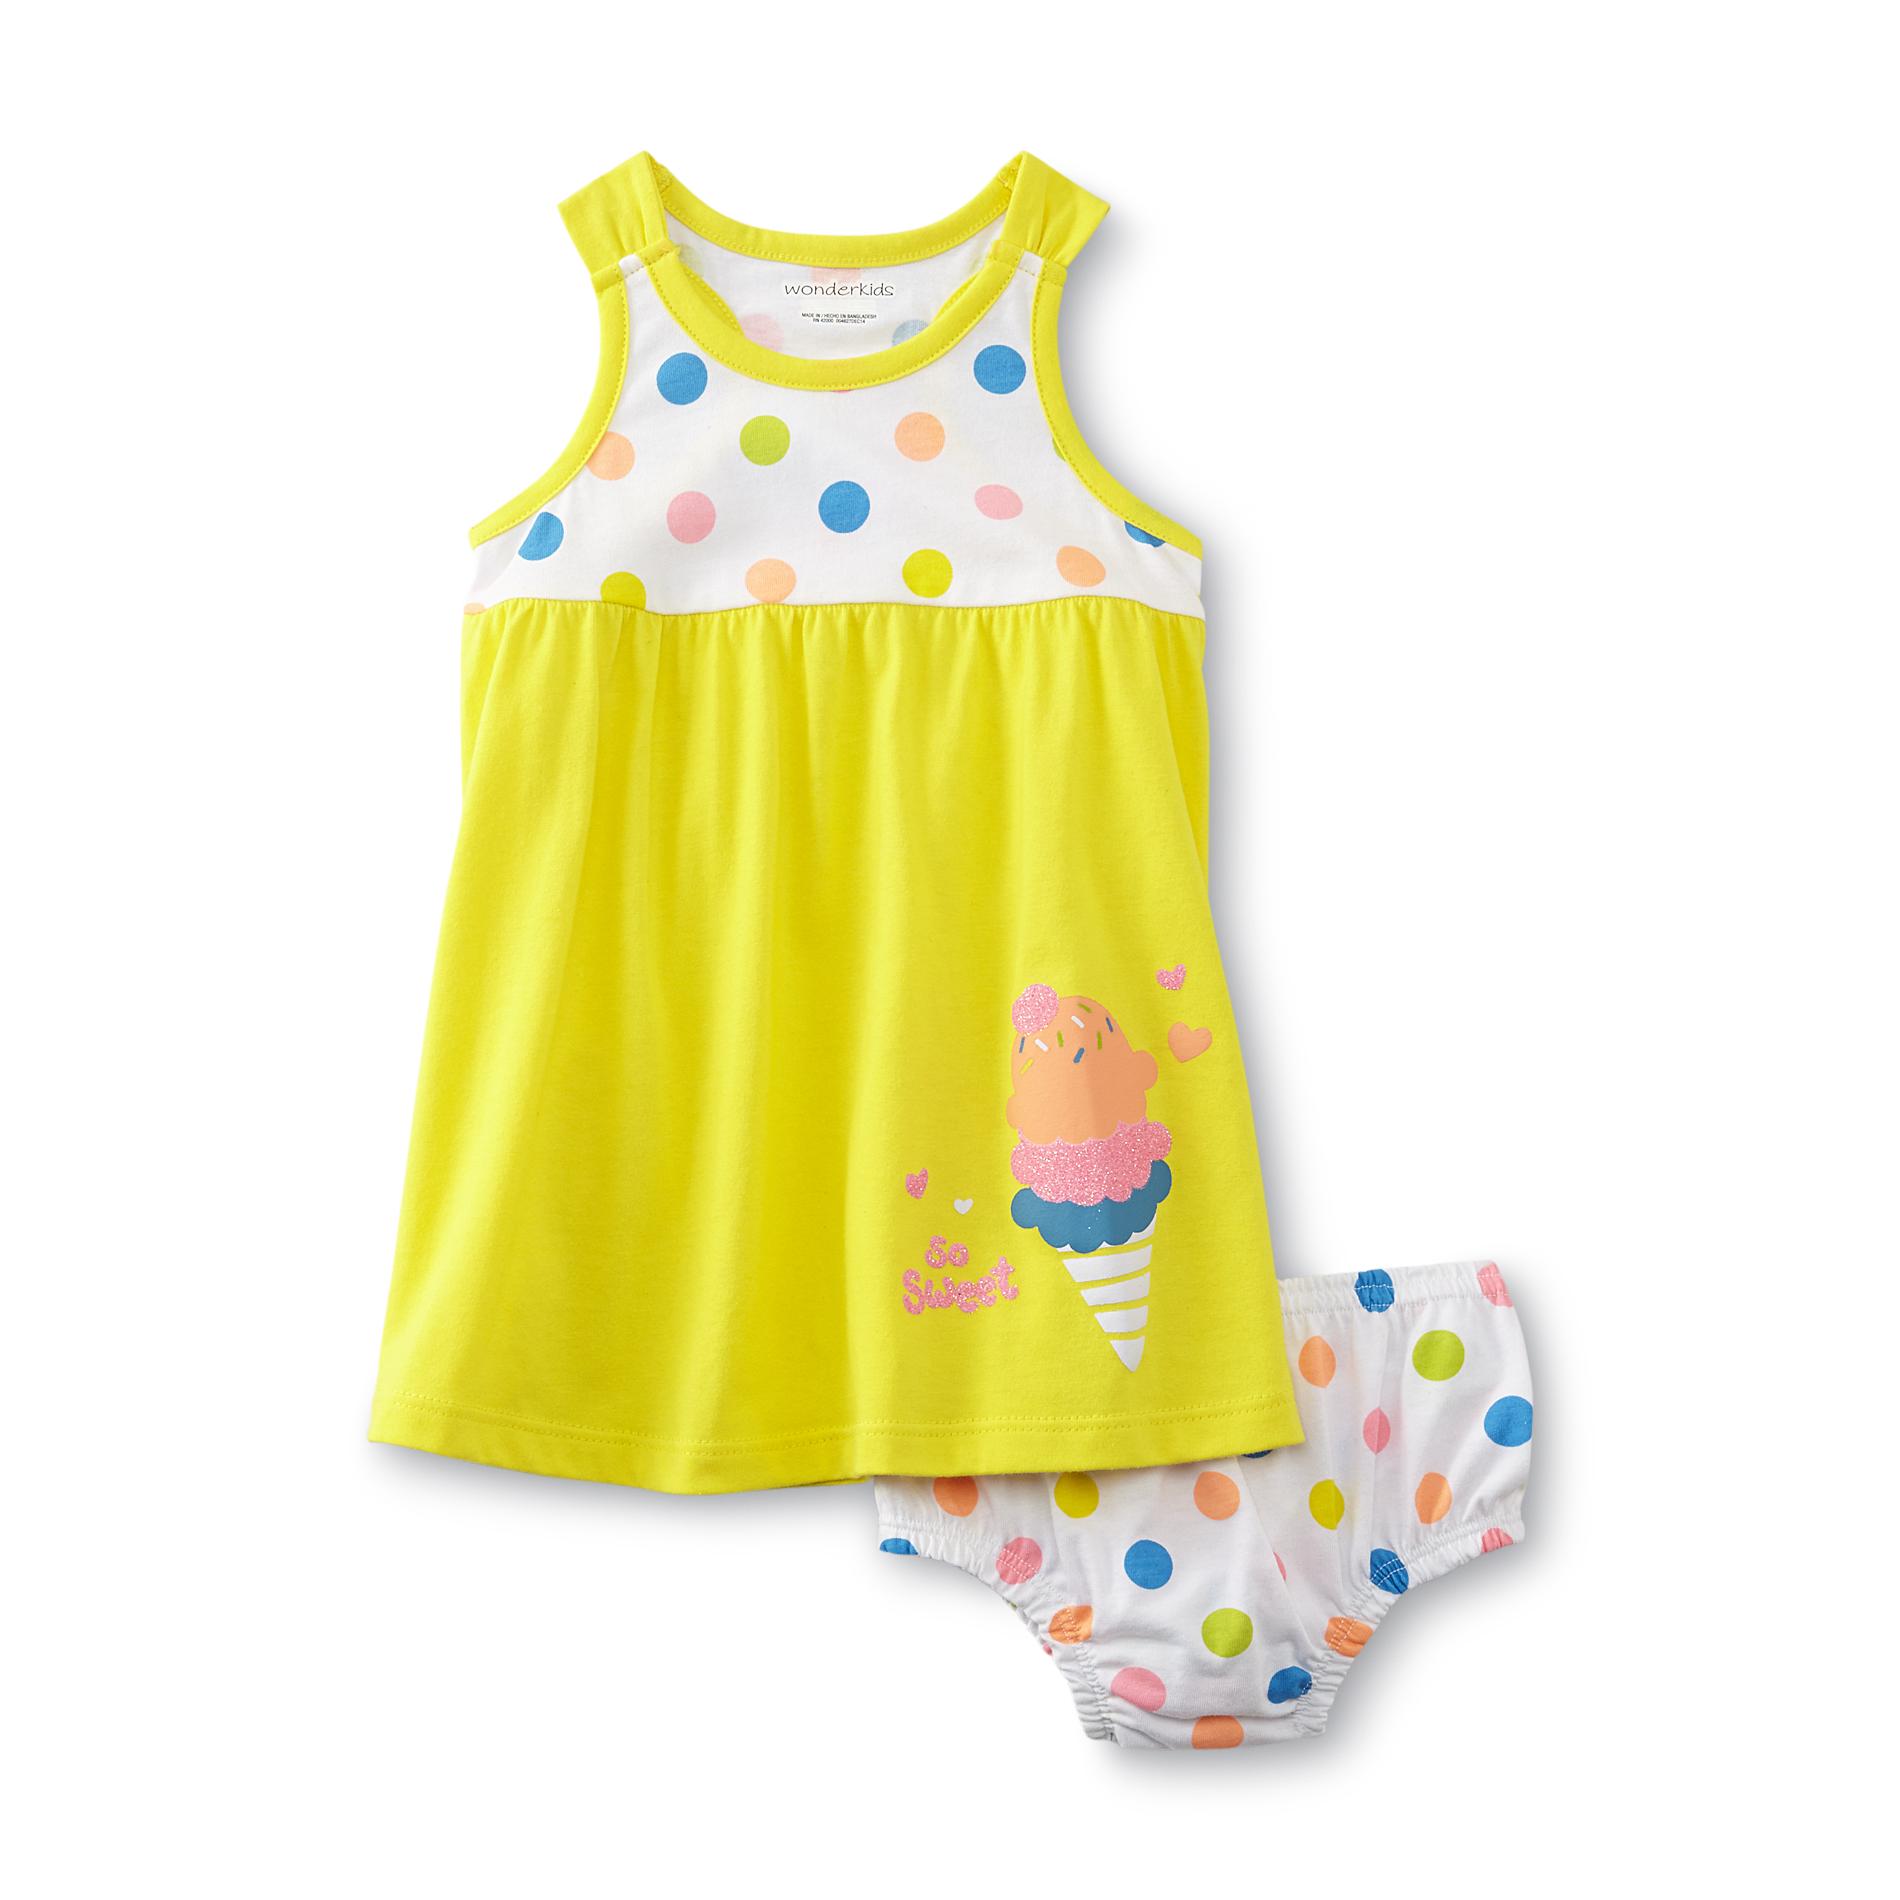 WonderKids Infant & Toddler Girl's Knit Dress - Ice Cream